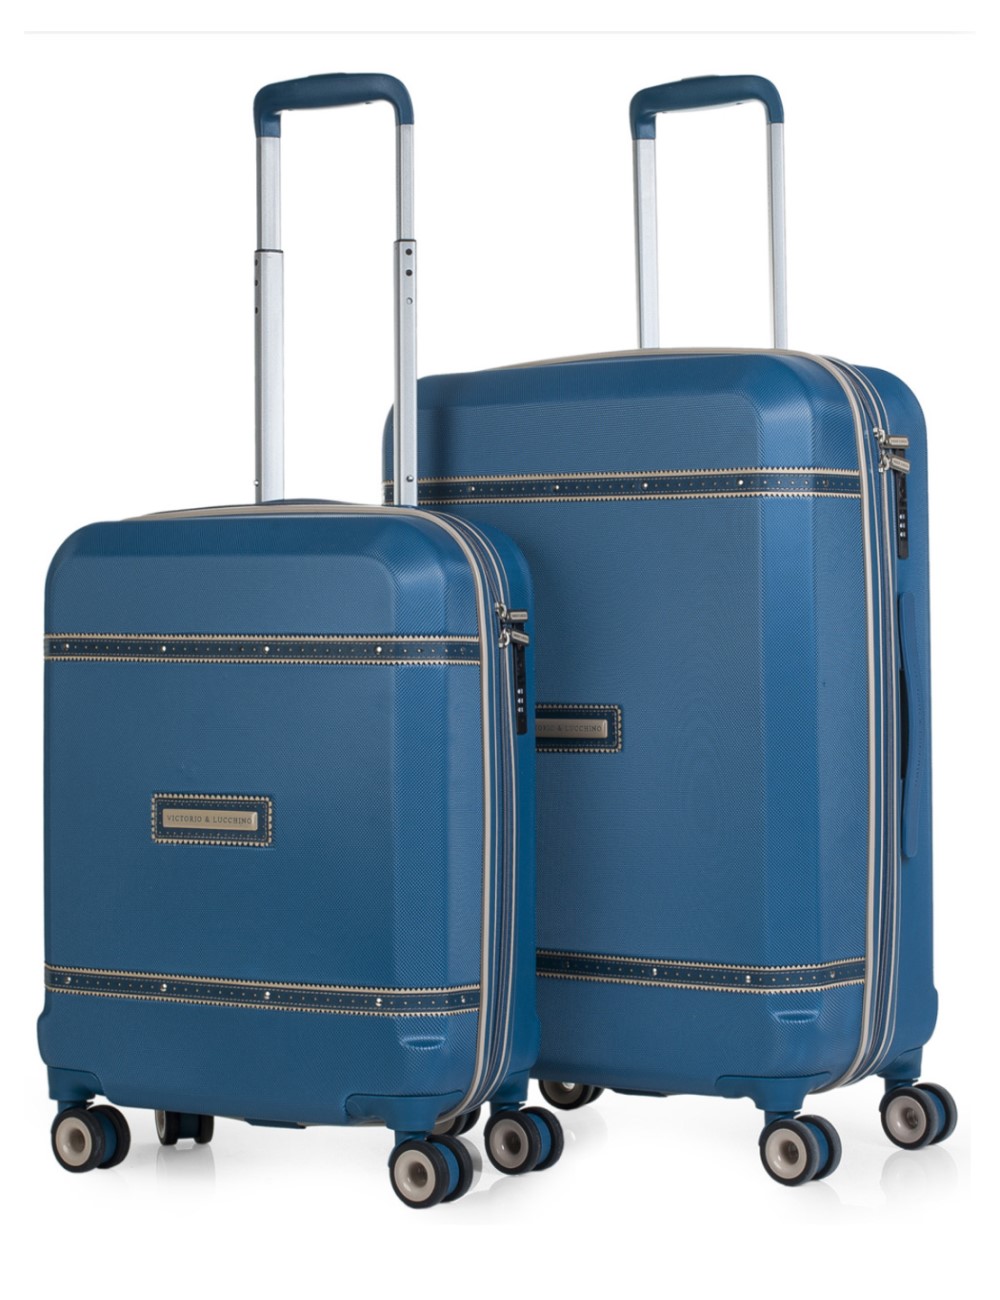 Descubre las distintas opciones de diseño de la maleta Victorio y Lucchino